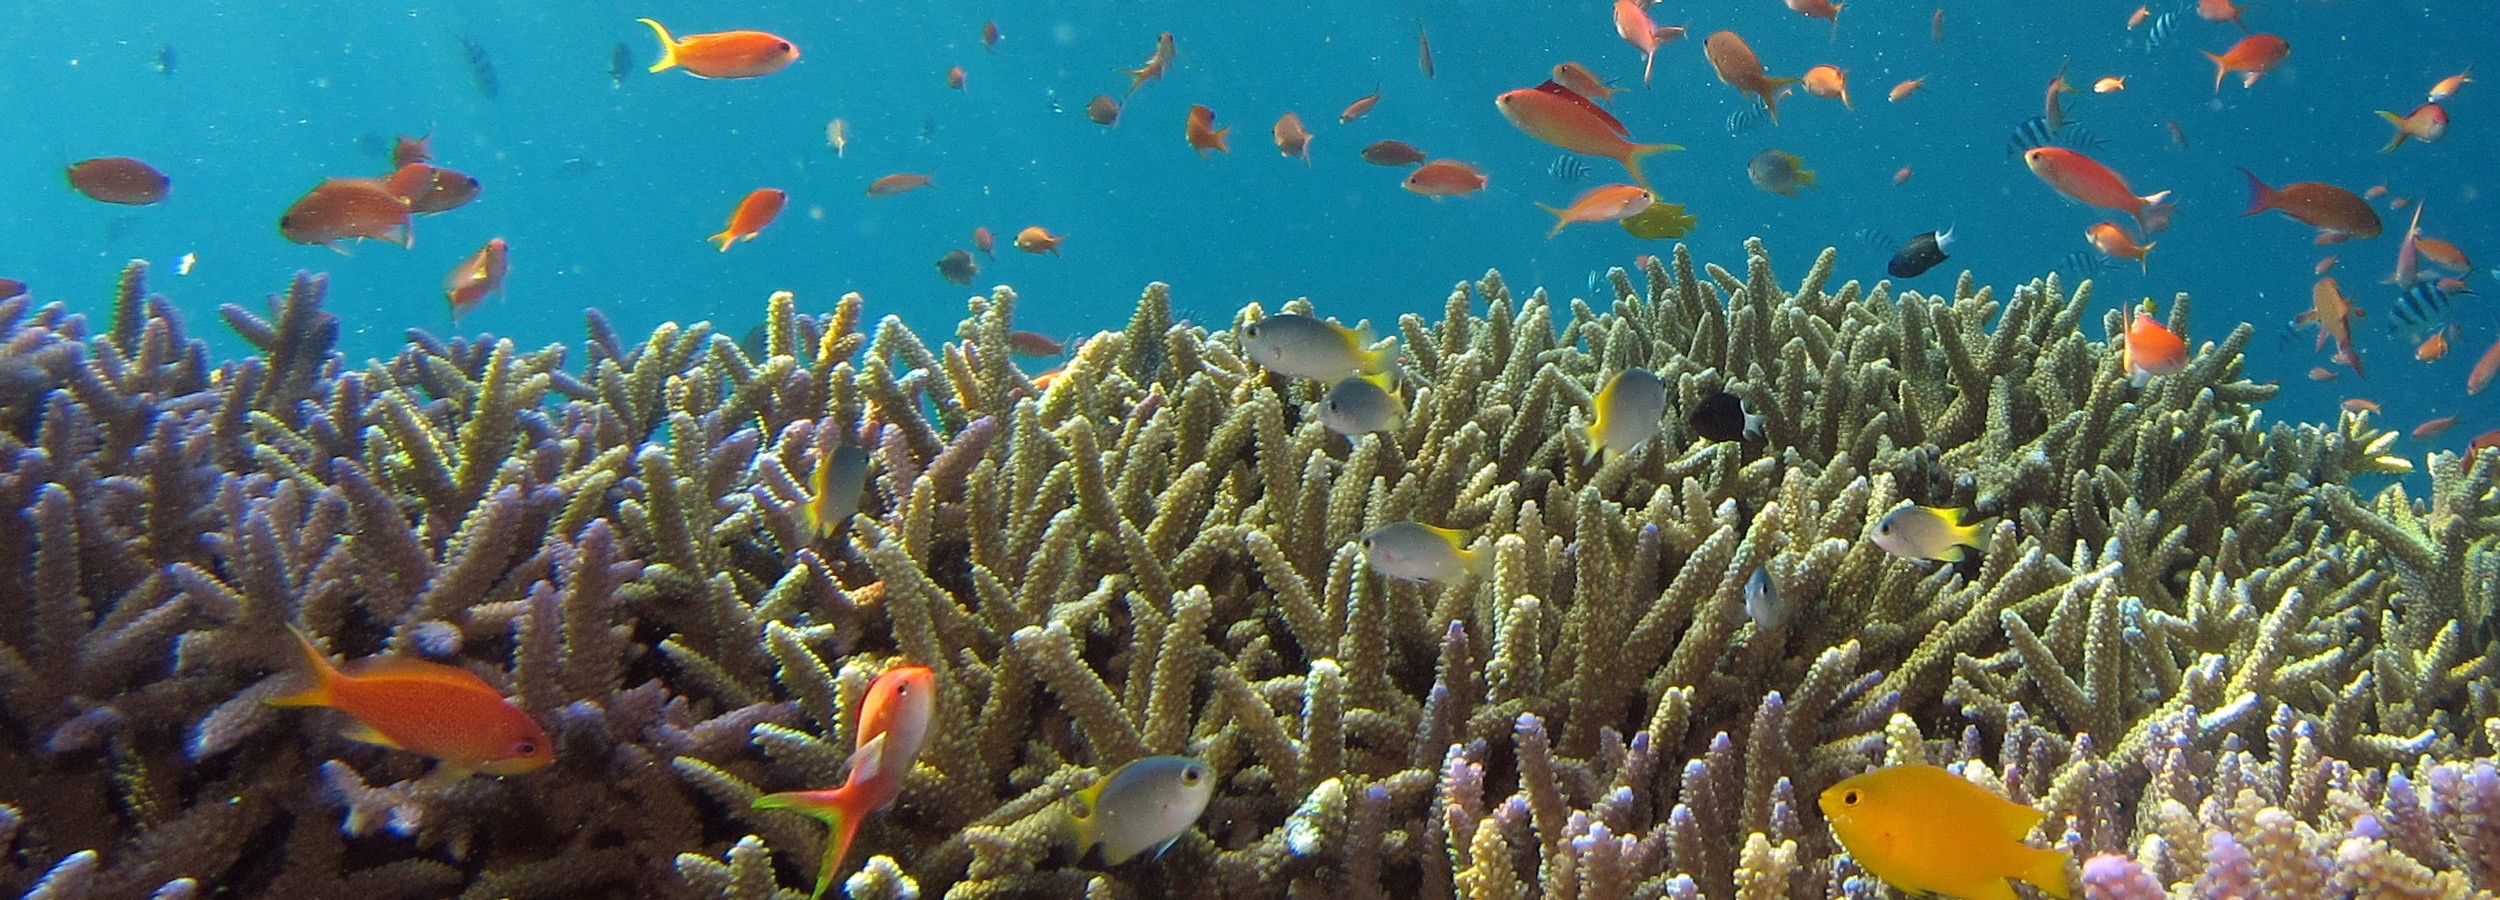 A importância da preservação dos oceanos para o futuro da humanidade em exposição